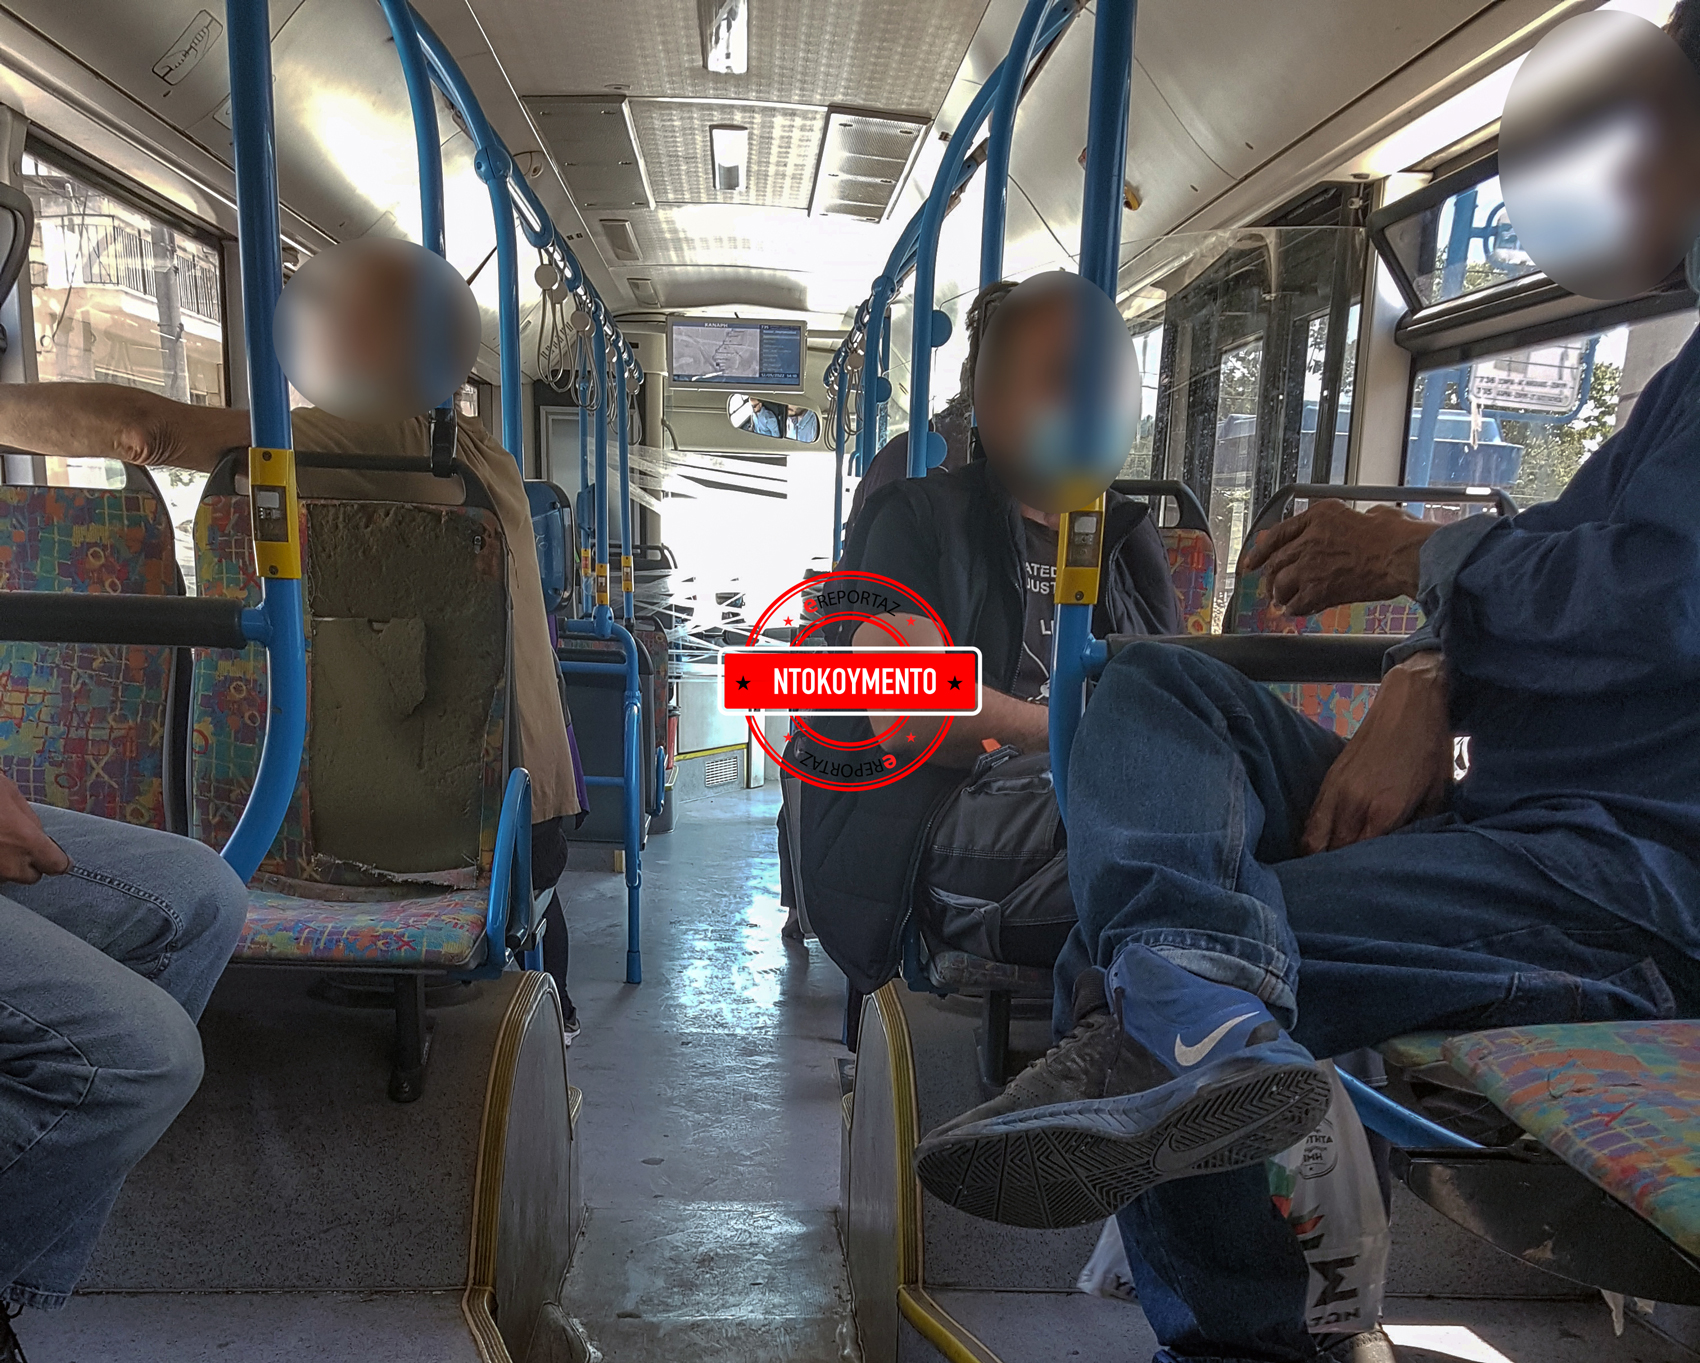 Στην Ελλάδα ο πιο γερασμένος στόλος αστικών λεωφορείων